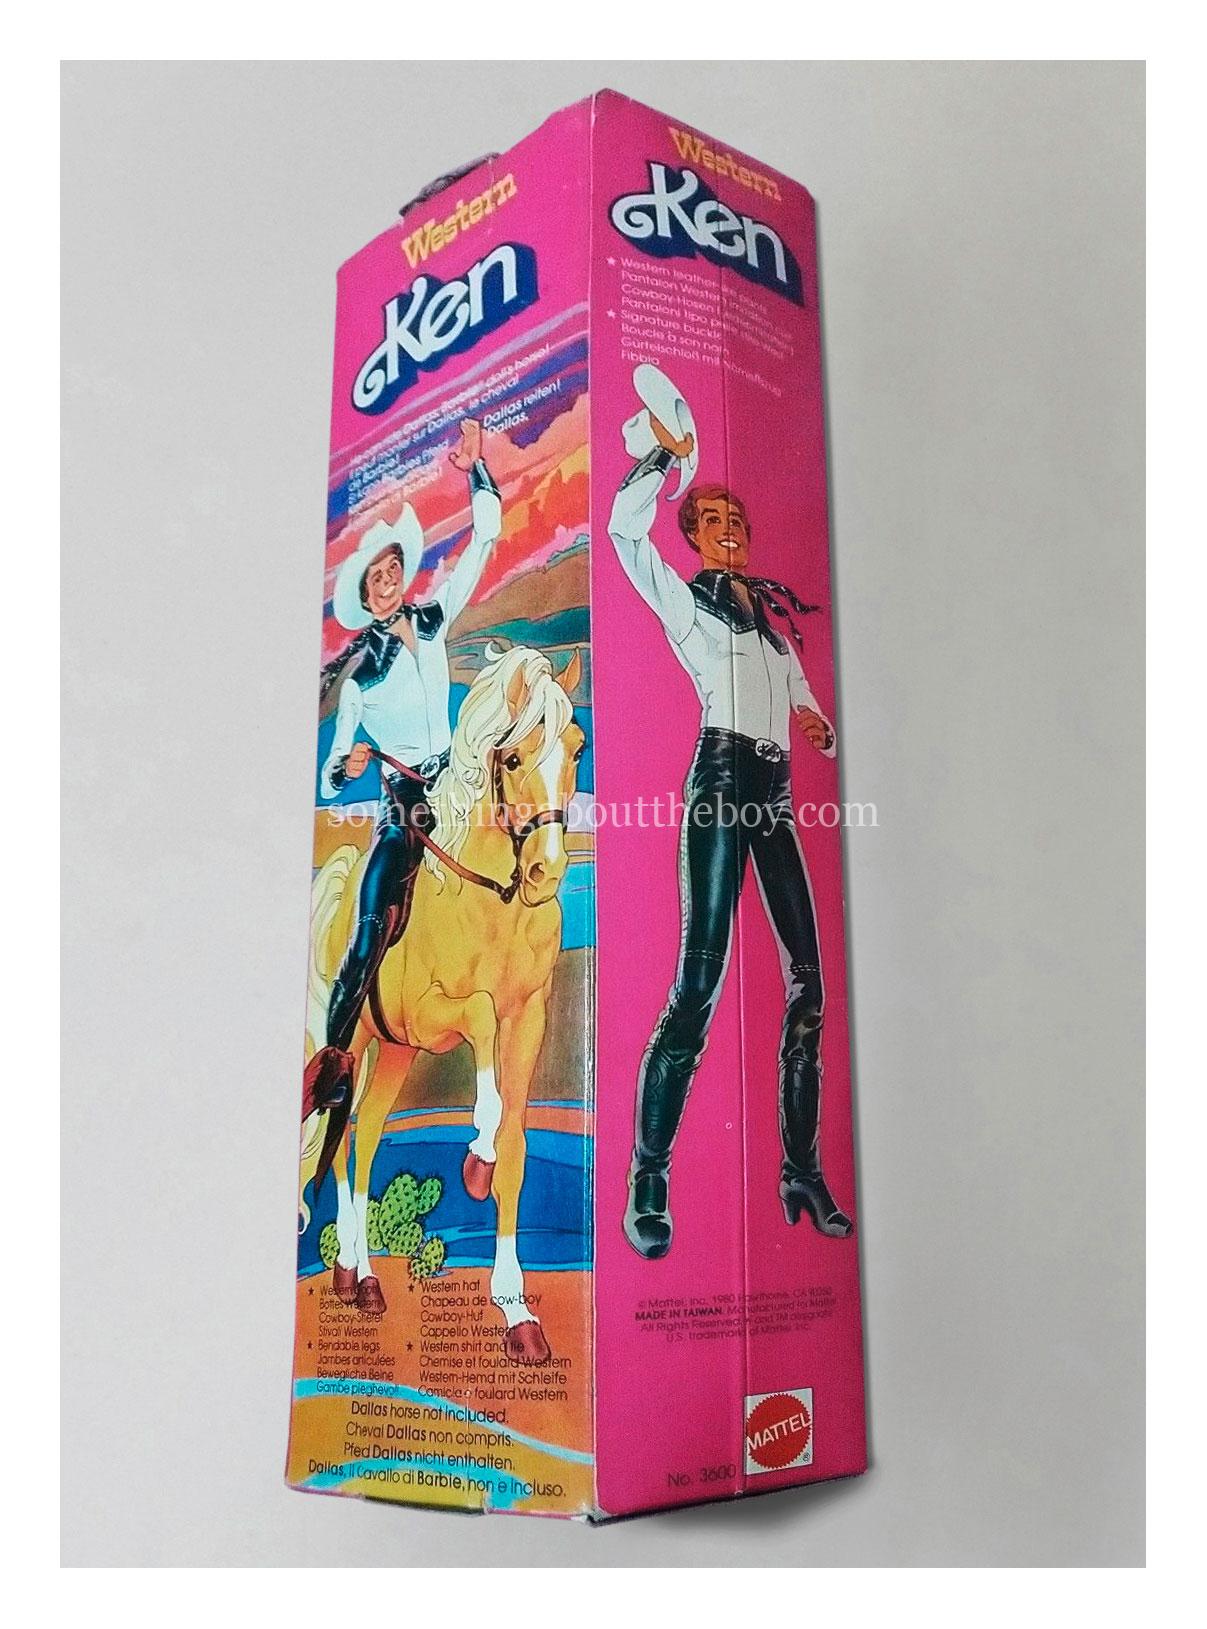 1981 #3600 Western Ken European packaging